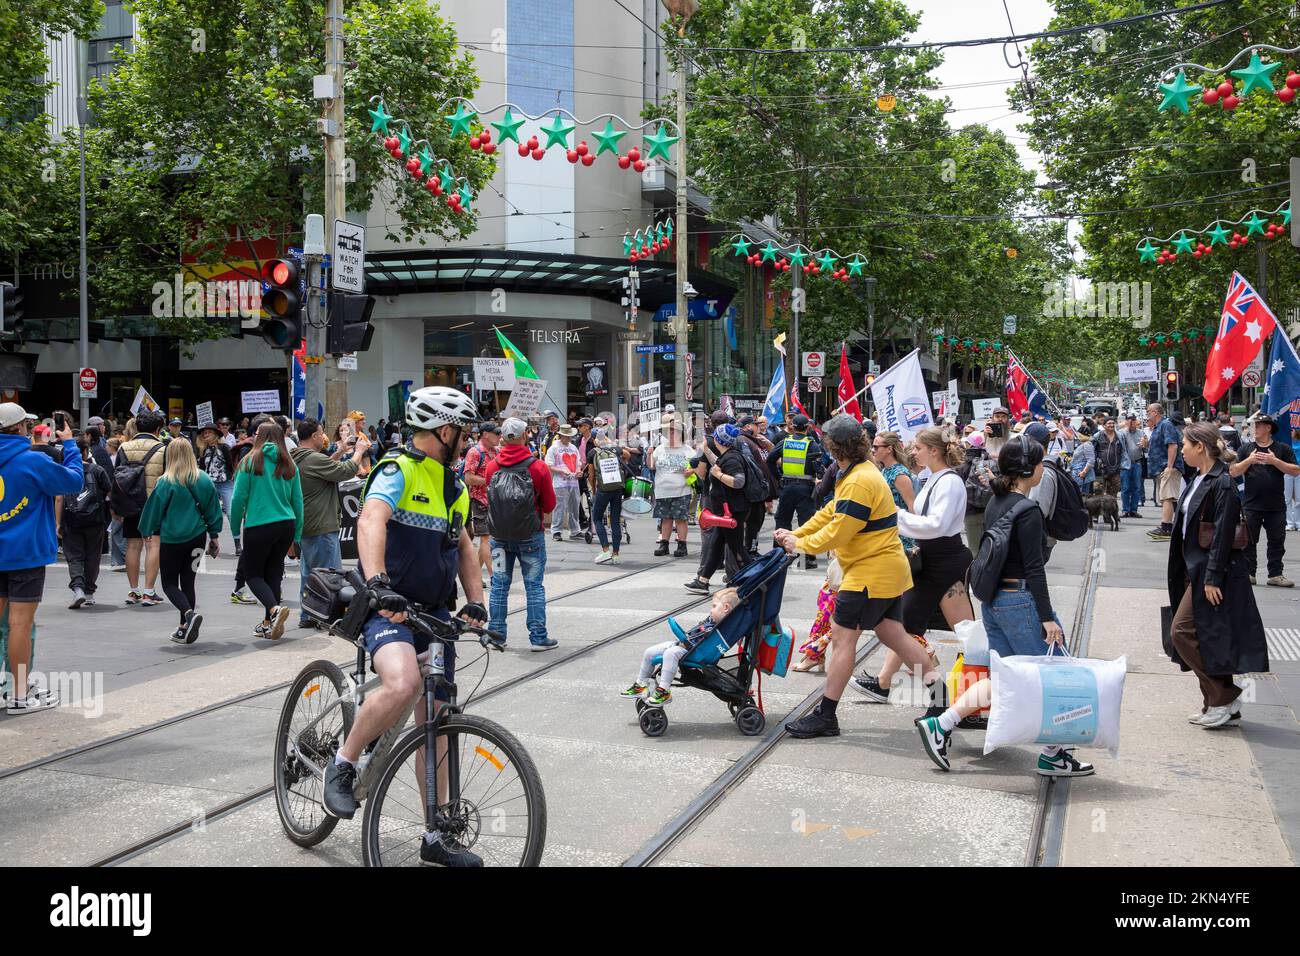 Un policier de Melbourne faisant partie d'une opération de police à vélo qui surveille une manifestation contre les vaccins dans le centre-ville de Melbourne, à Victoria, en Australie Banque D'Images